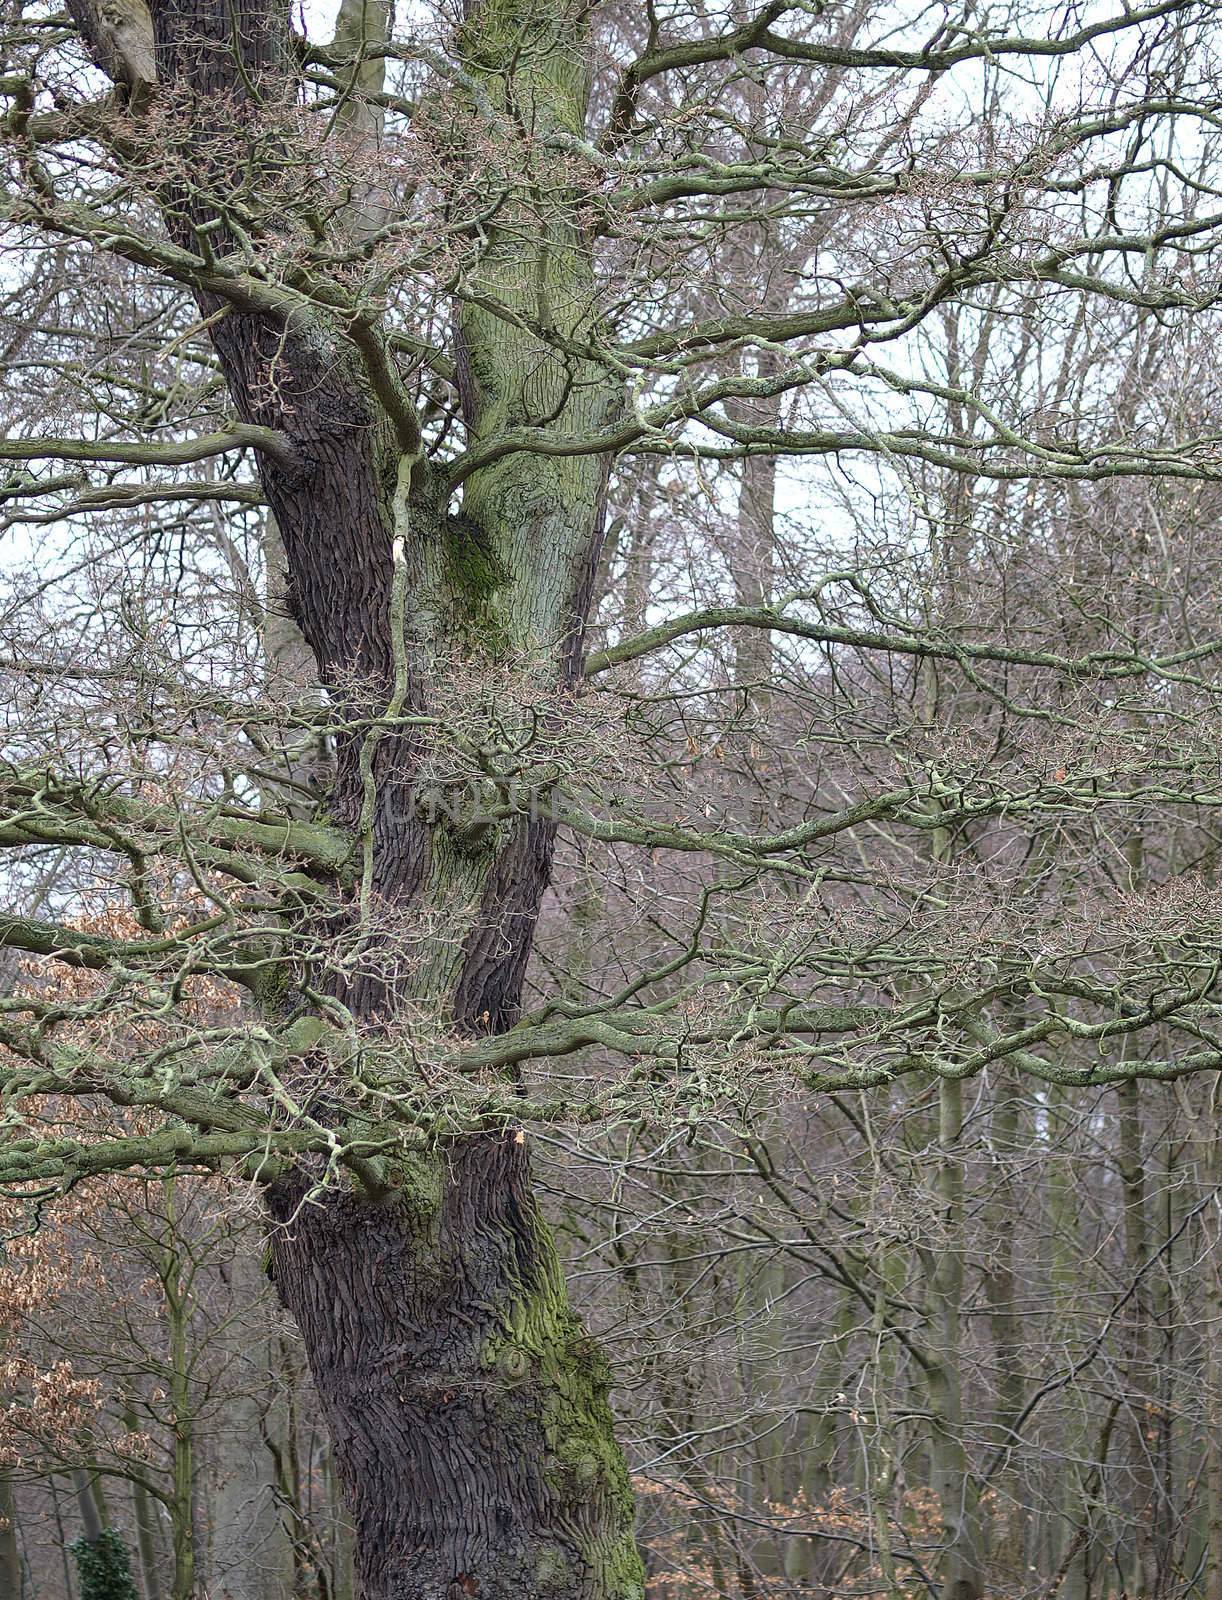 a leafless oak tree in winter